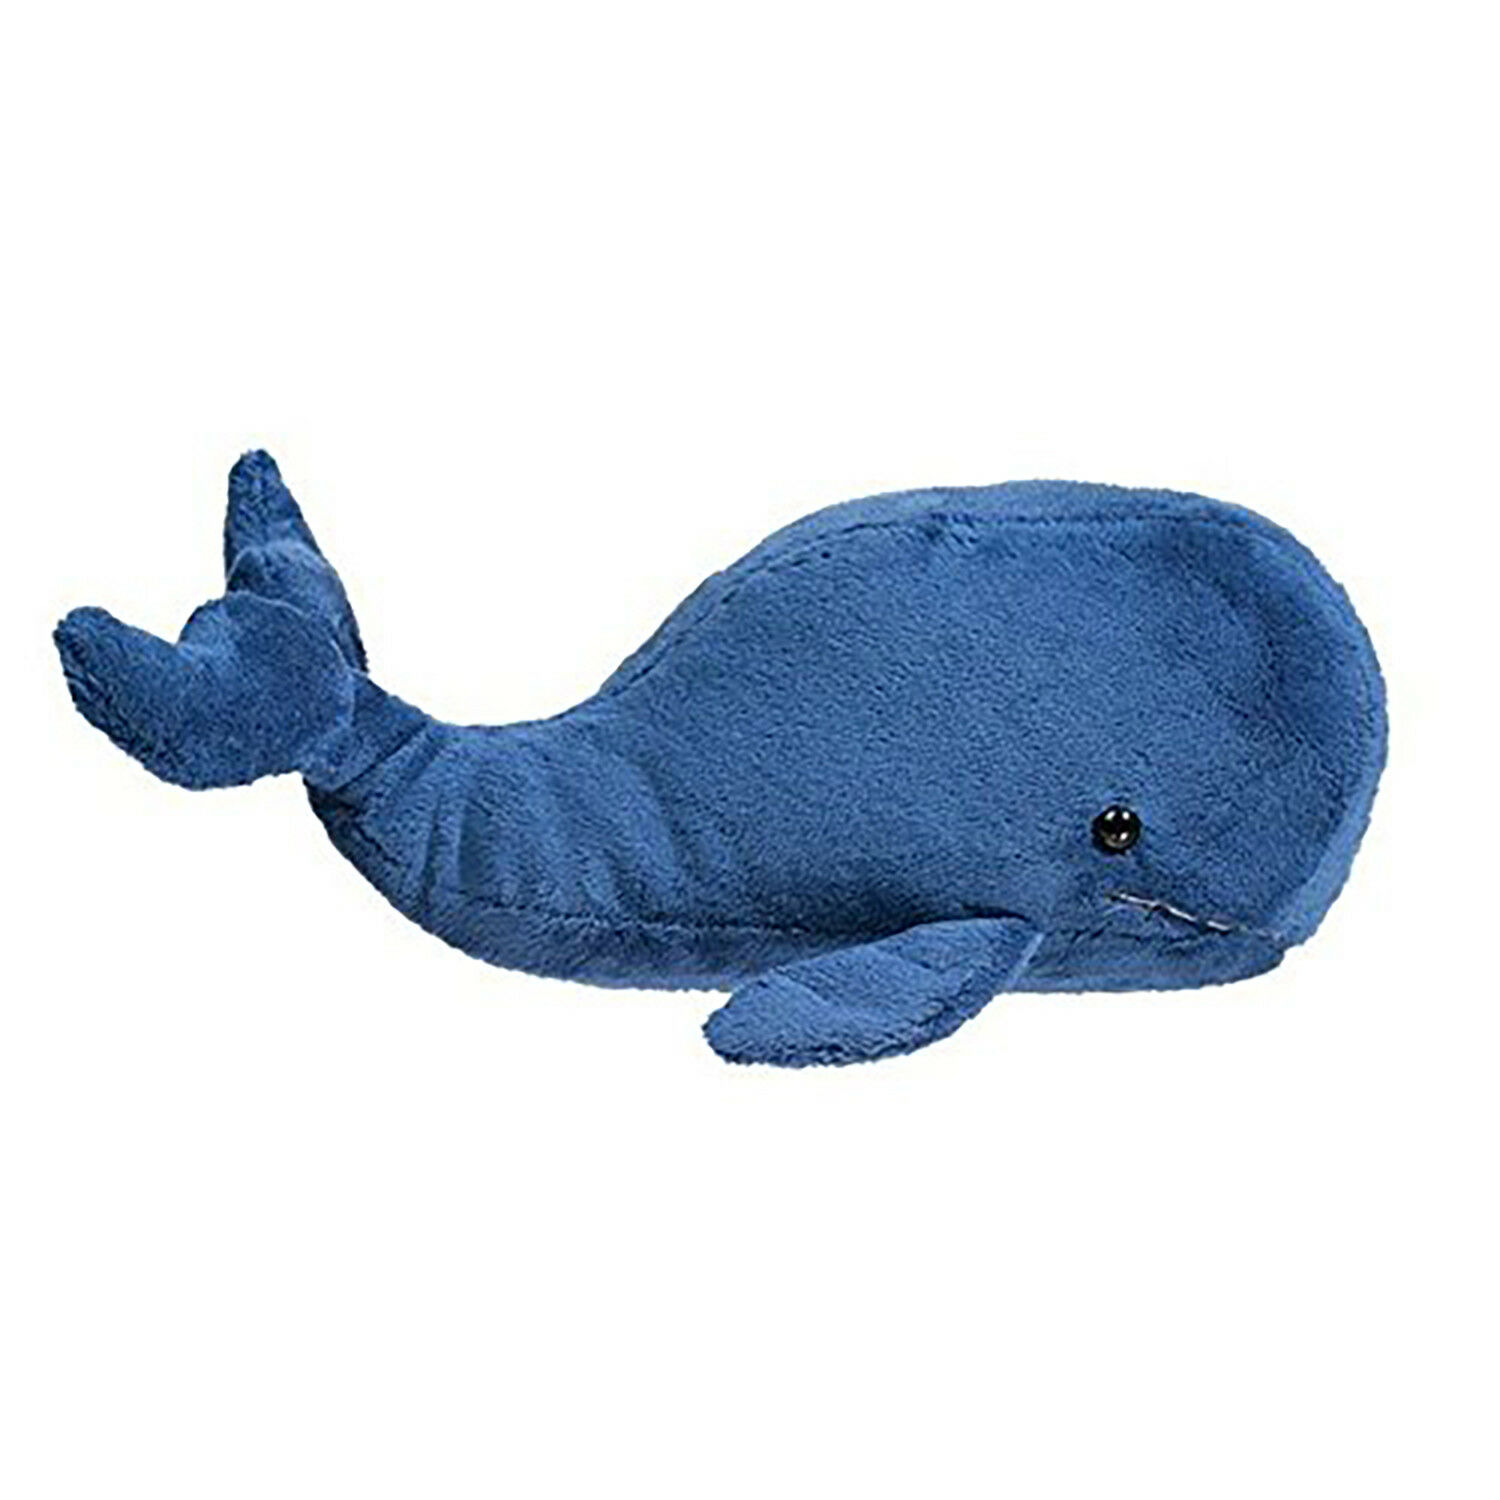 Douglas Toys Willie Navy Whale Plush Stuffed Animal Toy